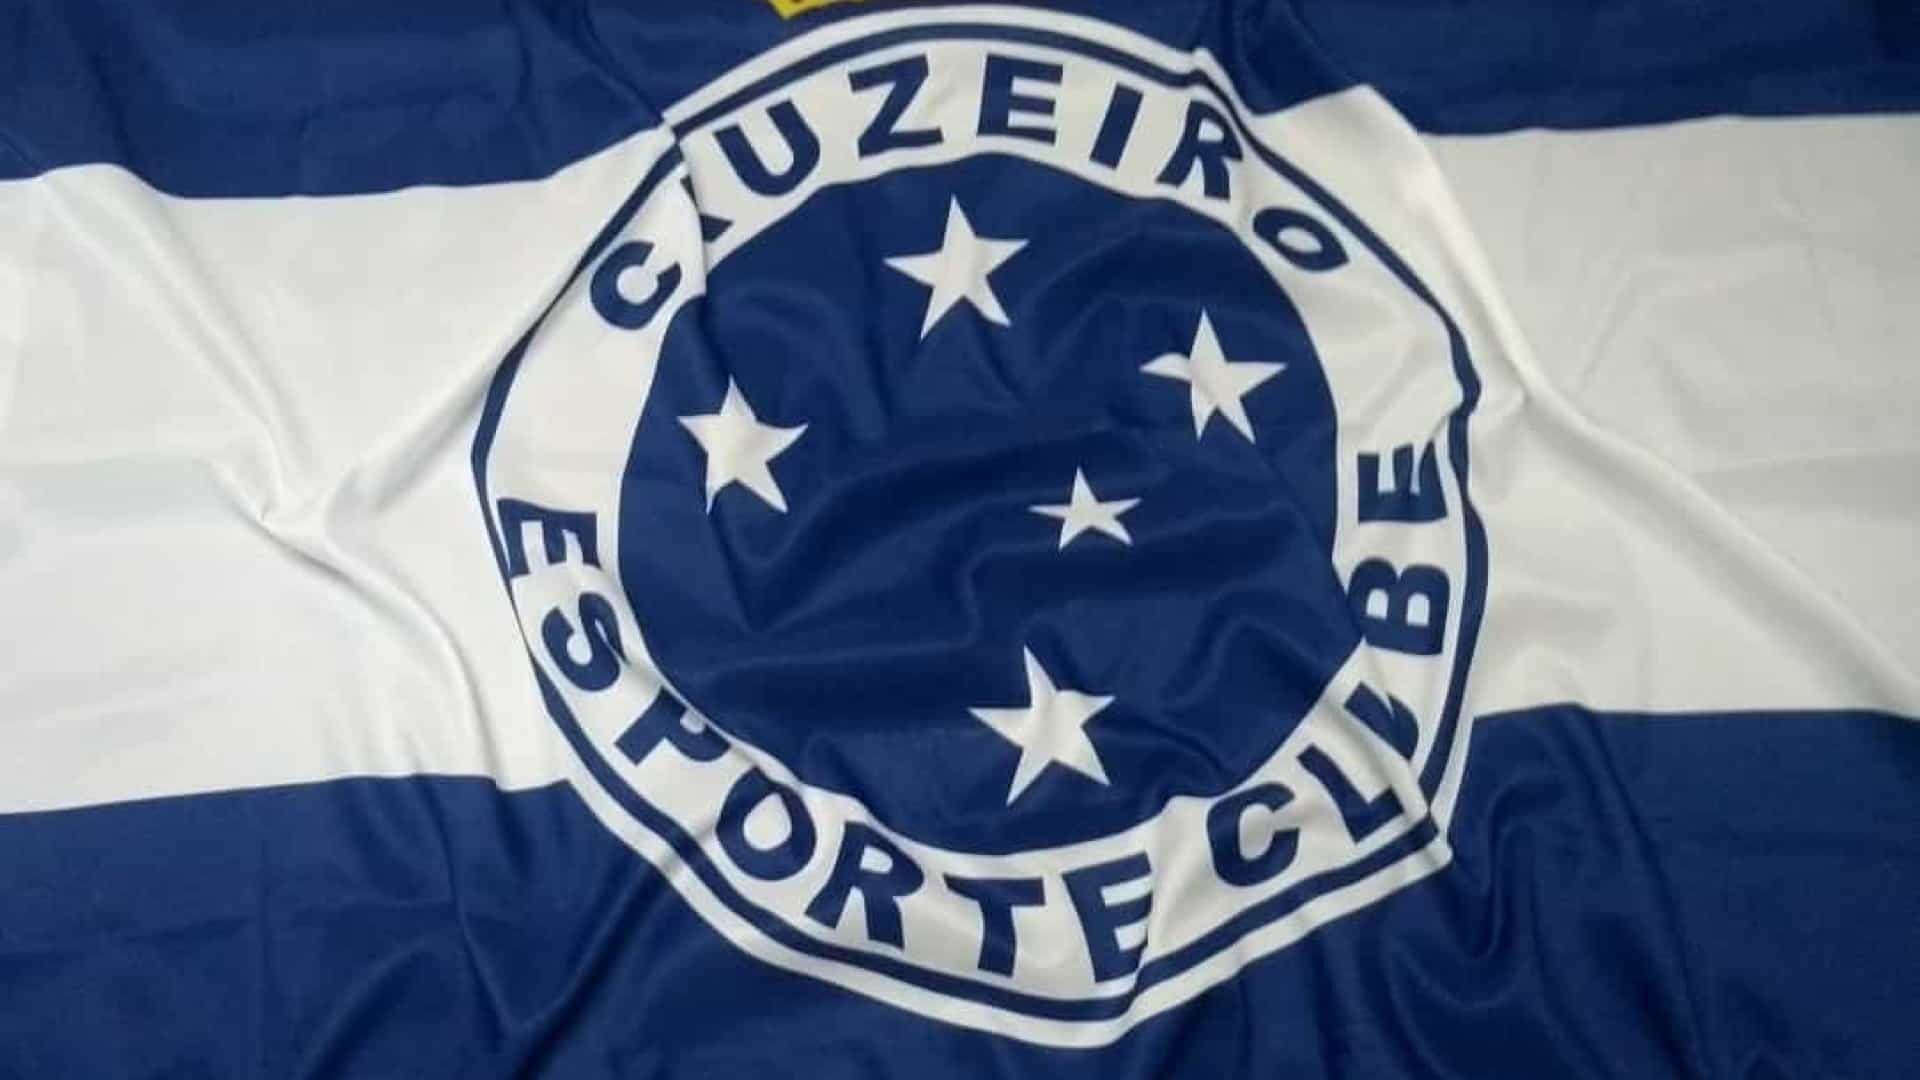 Justiça dá 15 dias para Cruzeiro pagar R$ 330 milhões a investidores de Dedé